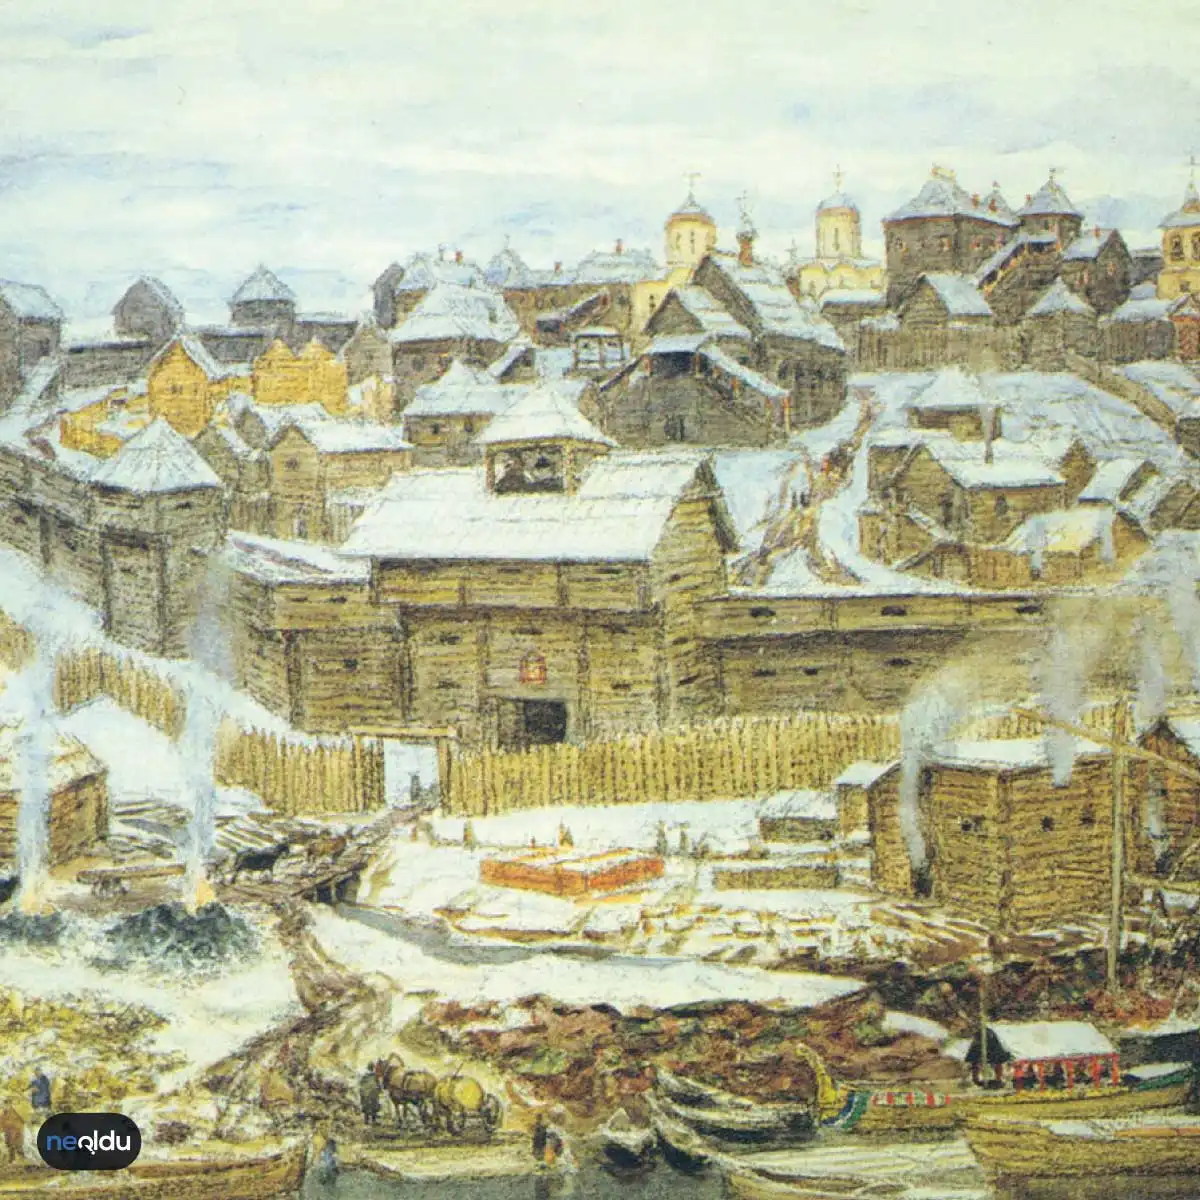 Novgorod’un Moskova Tarafından İşgali